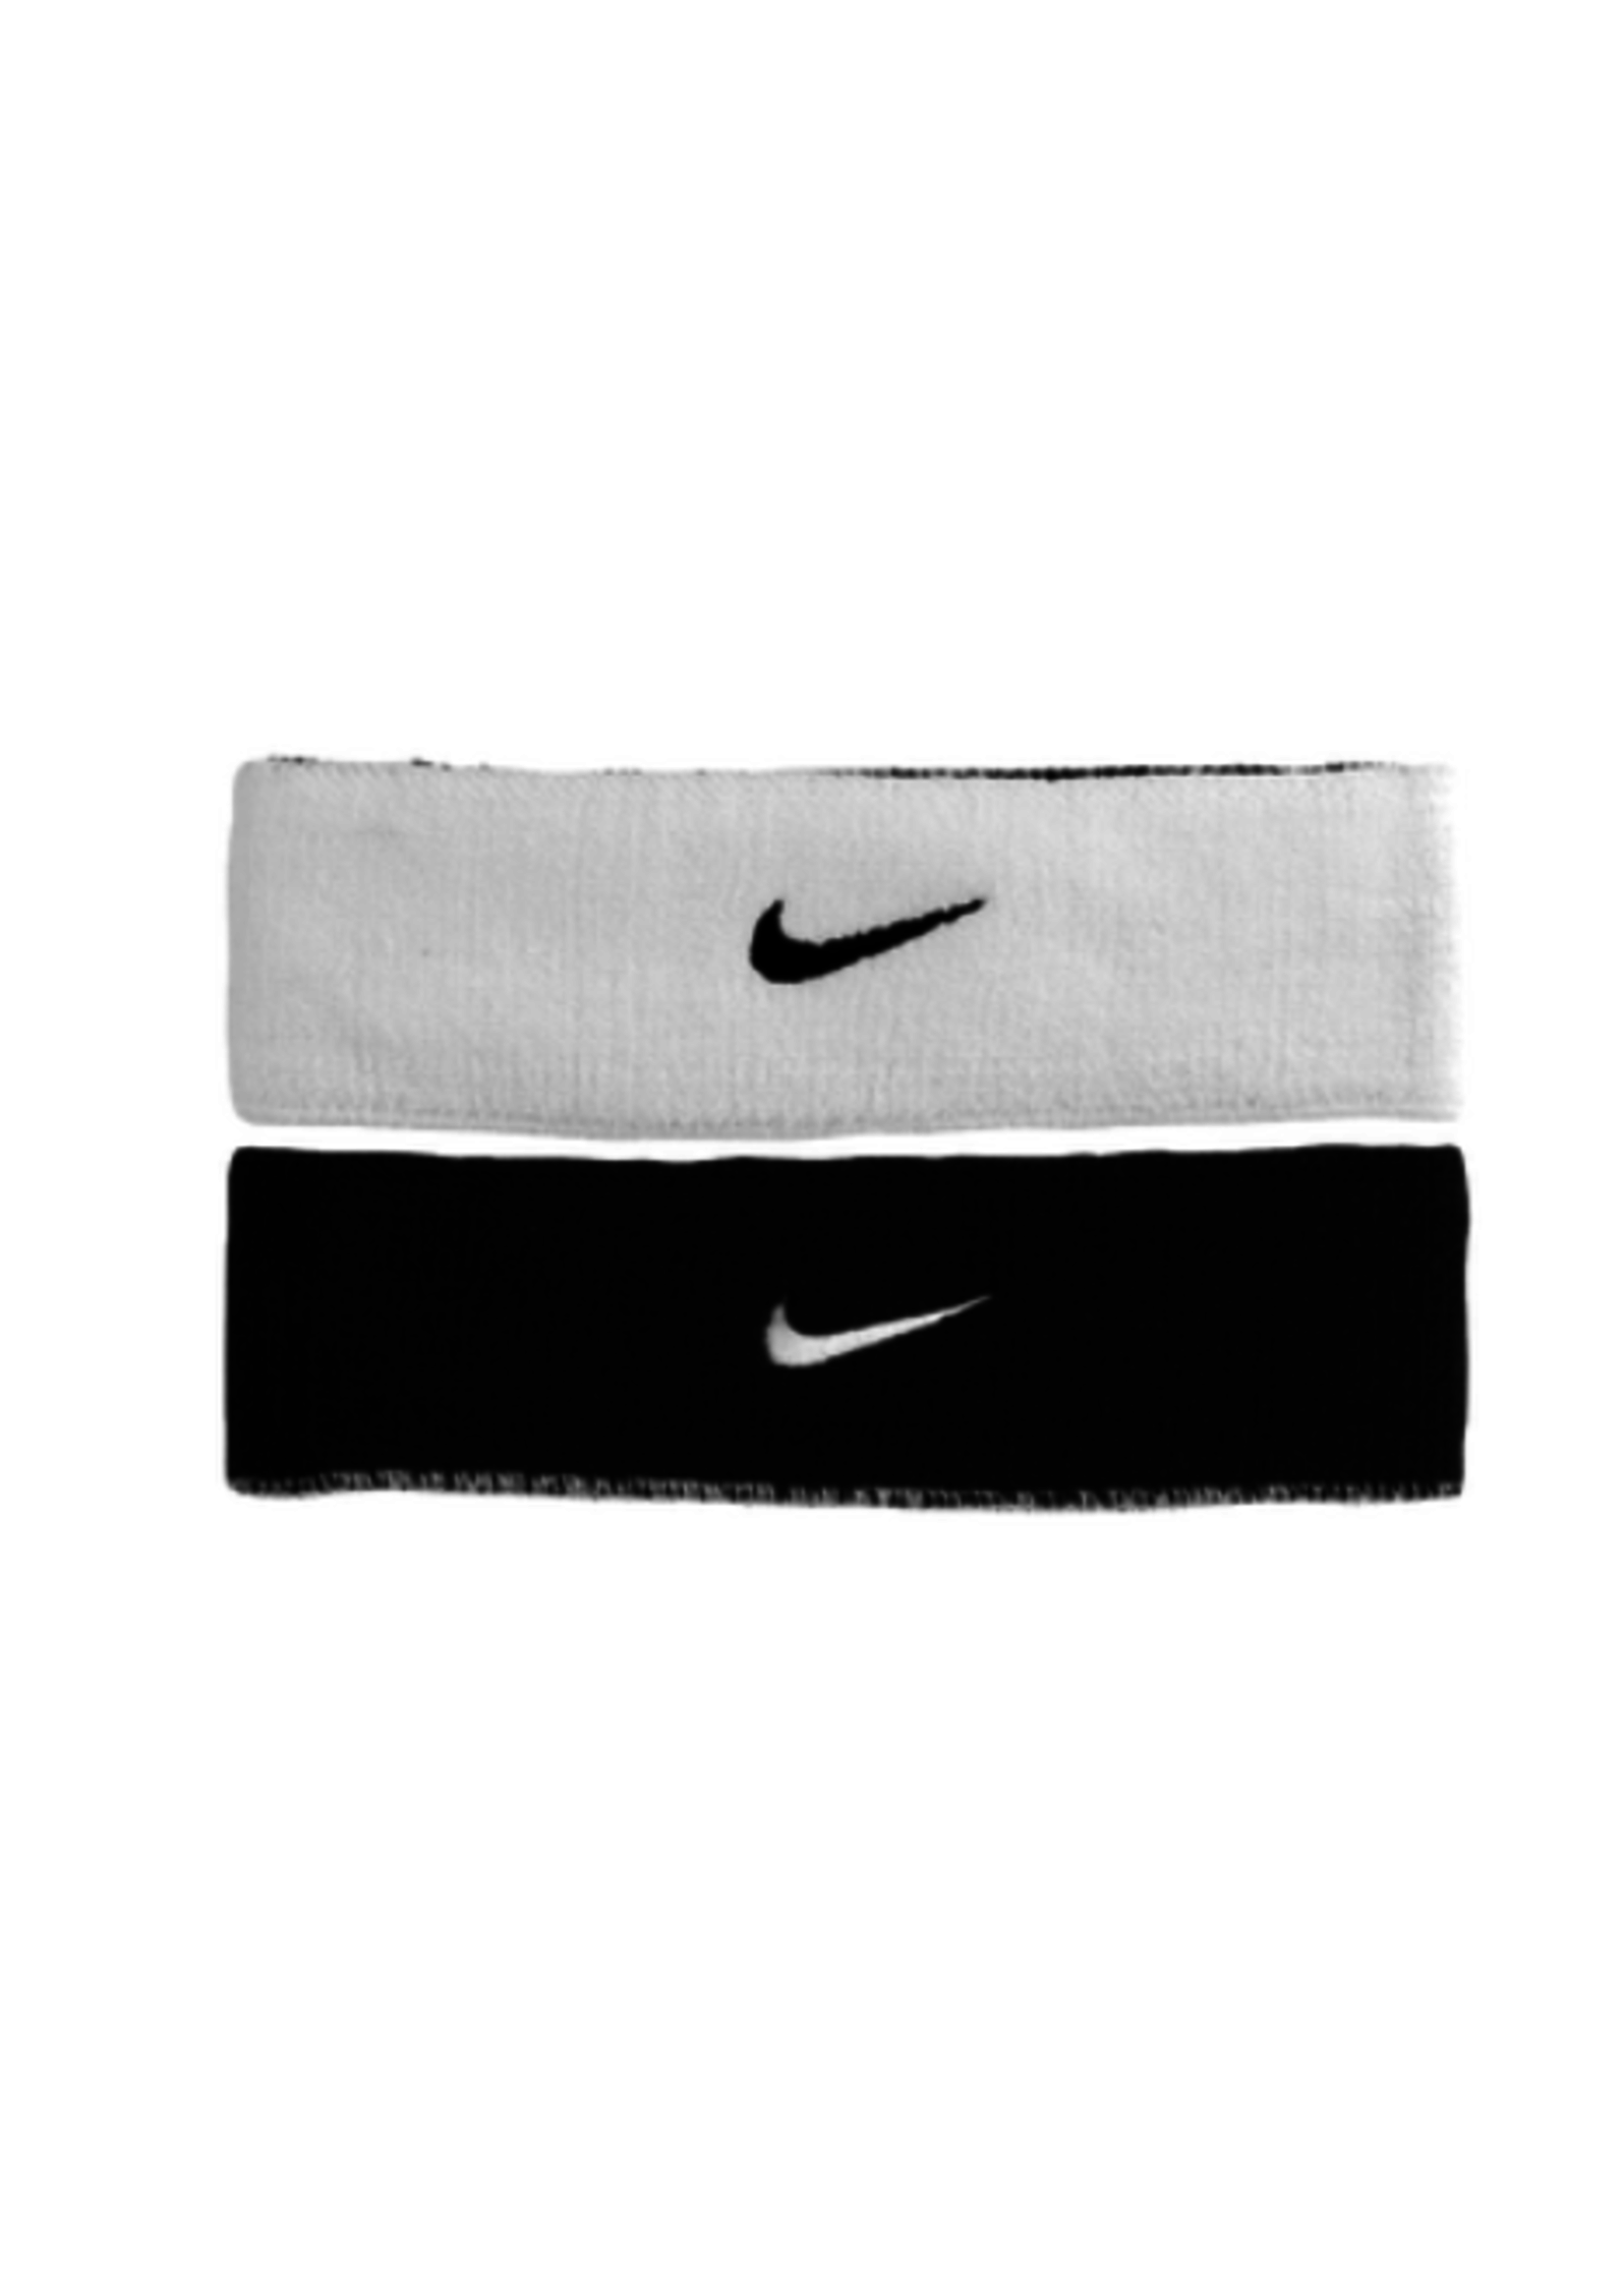 NON-UNIFORM Nike Dri-FIT Home & Away Headbands - Men's